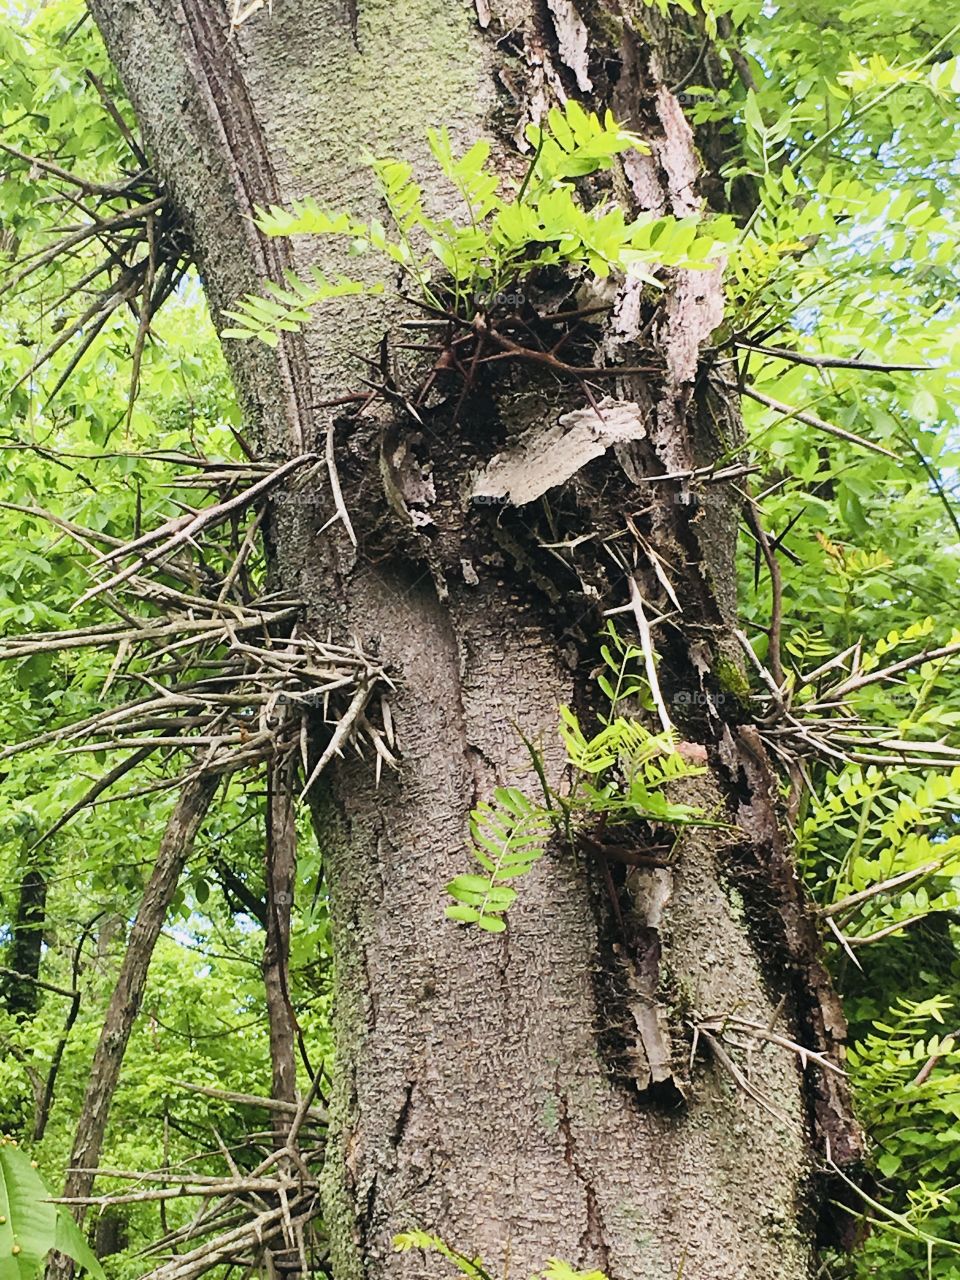 Thorns on tree